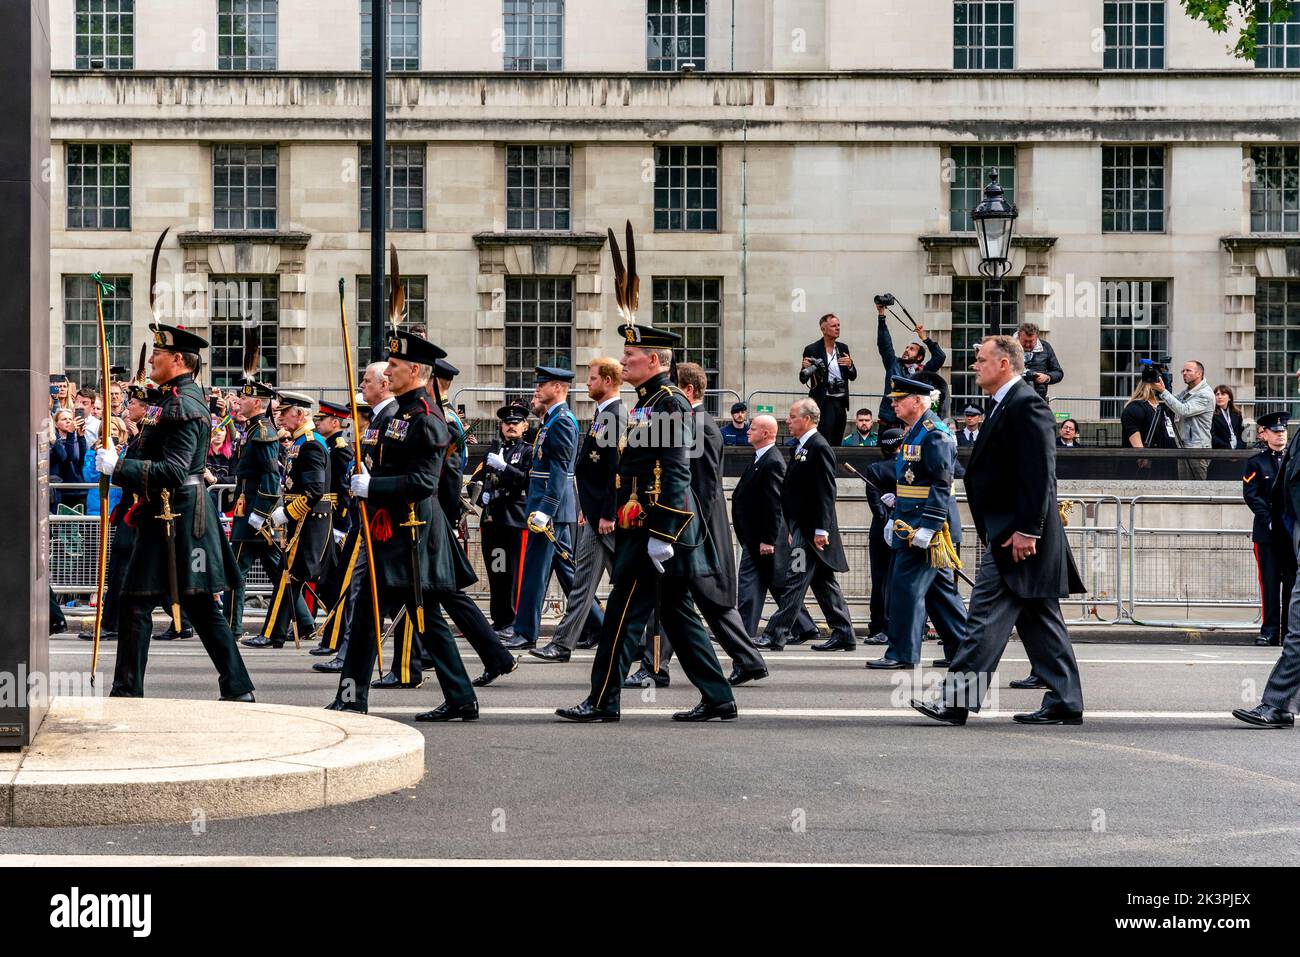 Les membres de la famille royale britannique marchent derrière le cercueil de la reine Elizabeth II pendant que la procession funéraire se déplace vers le haut Whitehall, Londres, Royaume-Uni. Banque D'Images